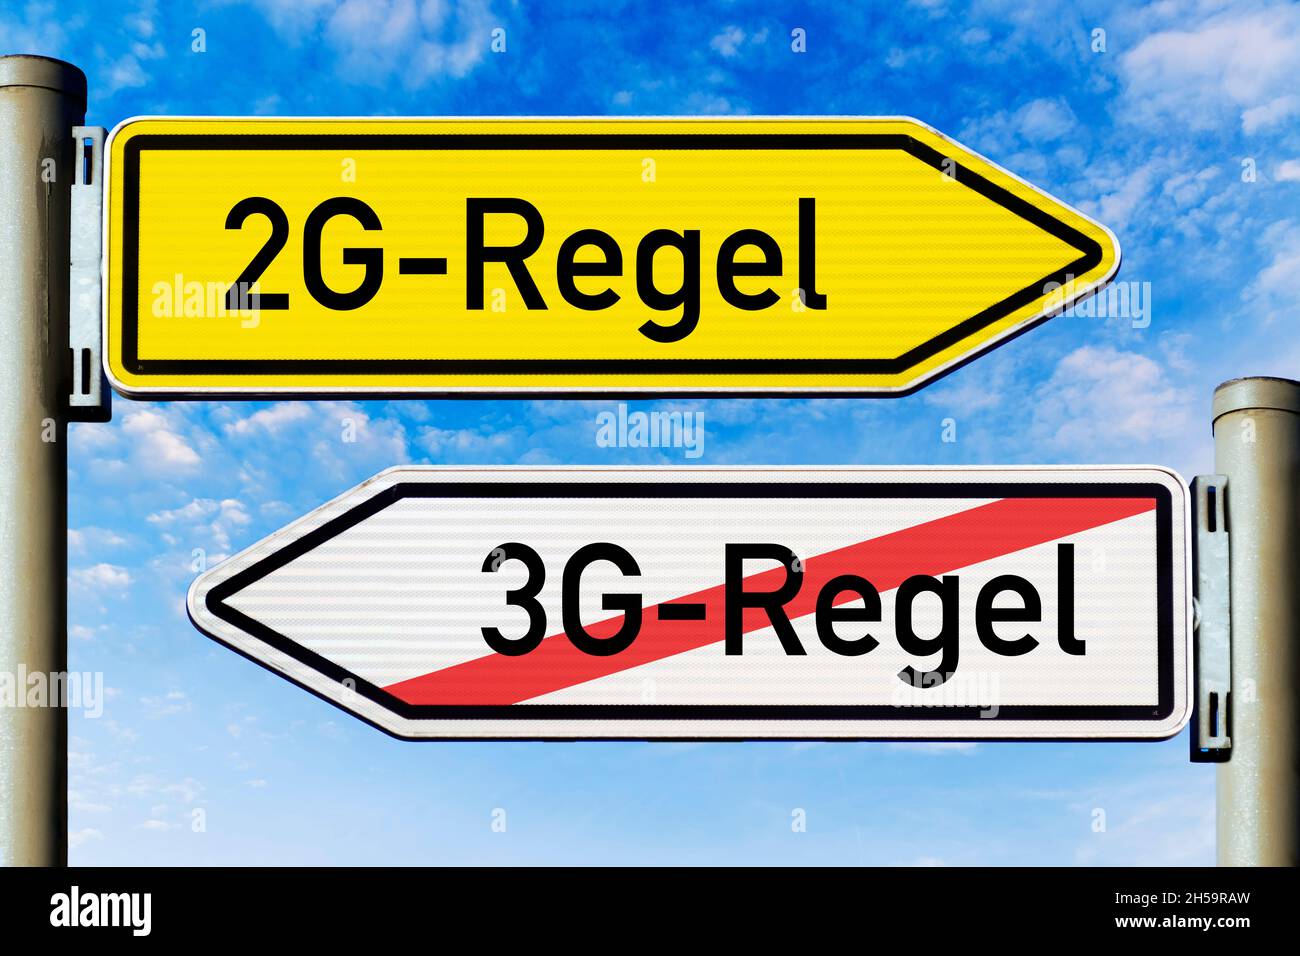 FOTOMONTAGE, Wegweiser mit der Aufschrift 2G-Regel und 3G-Regel Stock Photo